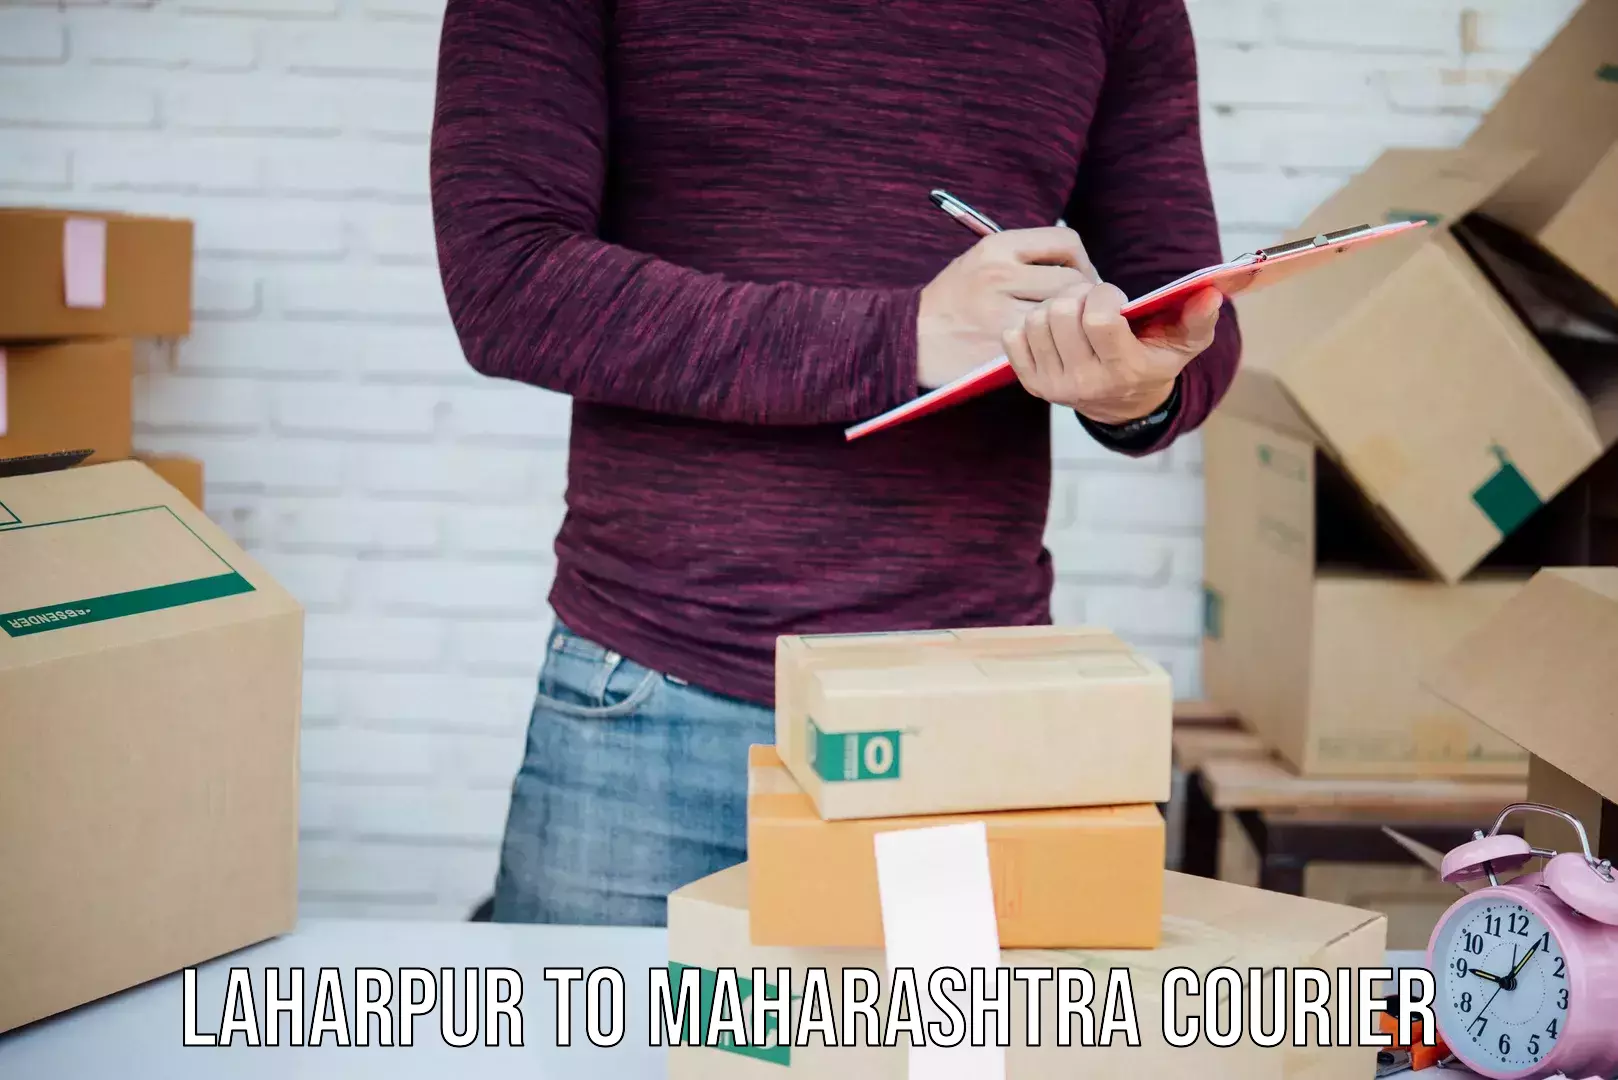 E-commerce shipping partnerships Laharpur to Maharashtra